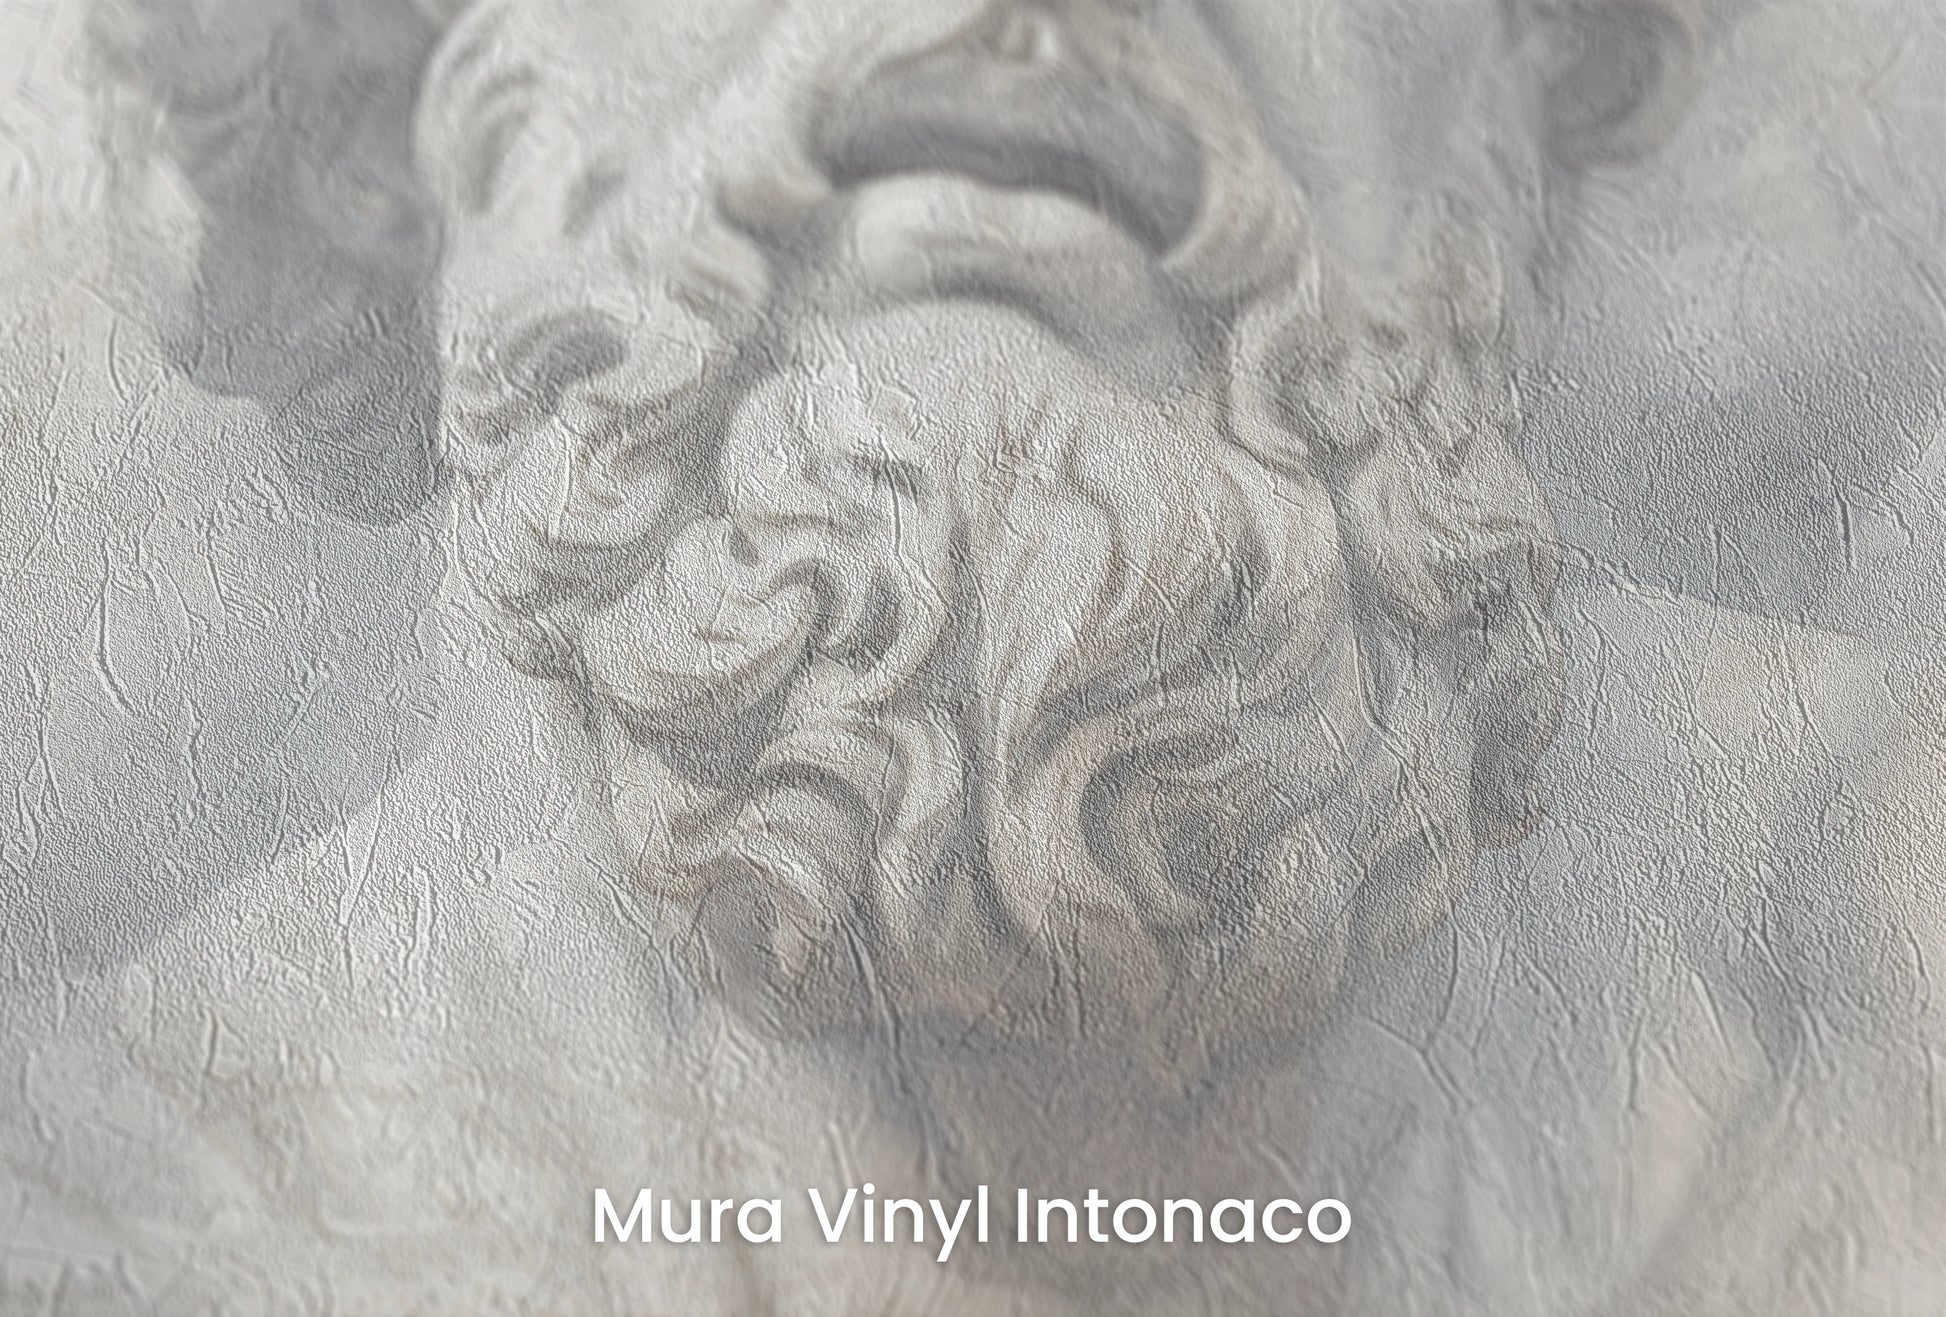 Zbliżenie na artystyczną fototapetę o nazwie Zeus's Thunder na podłożu Mura Vinyl Intonaco - struktura tartego tynku.